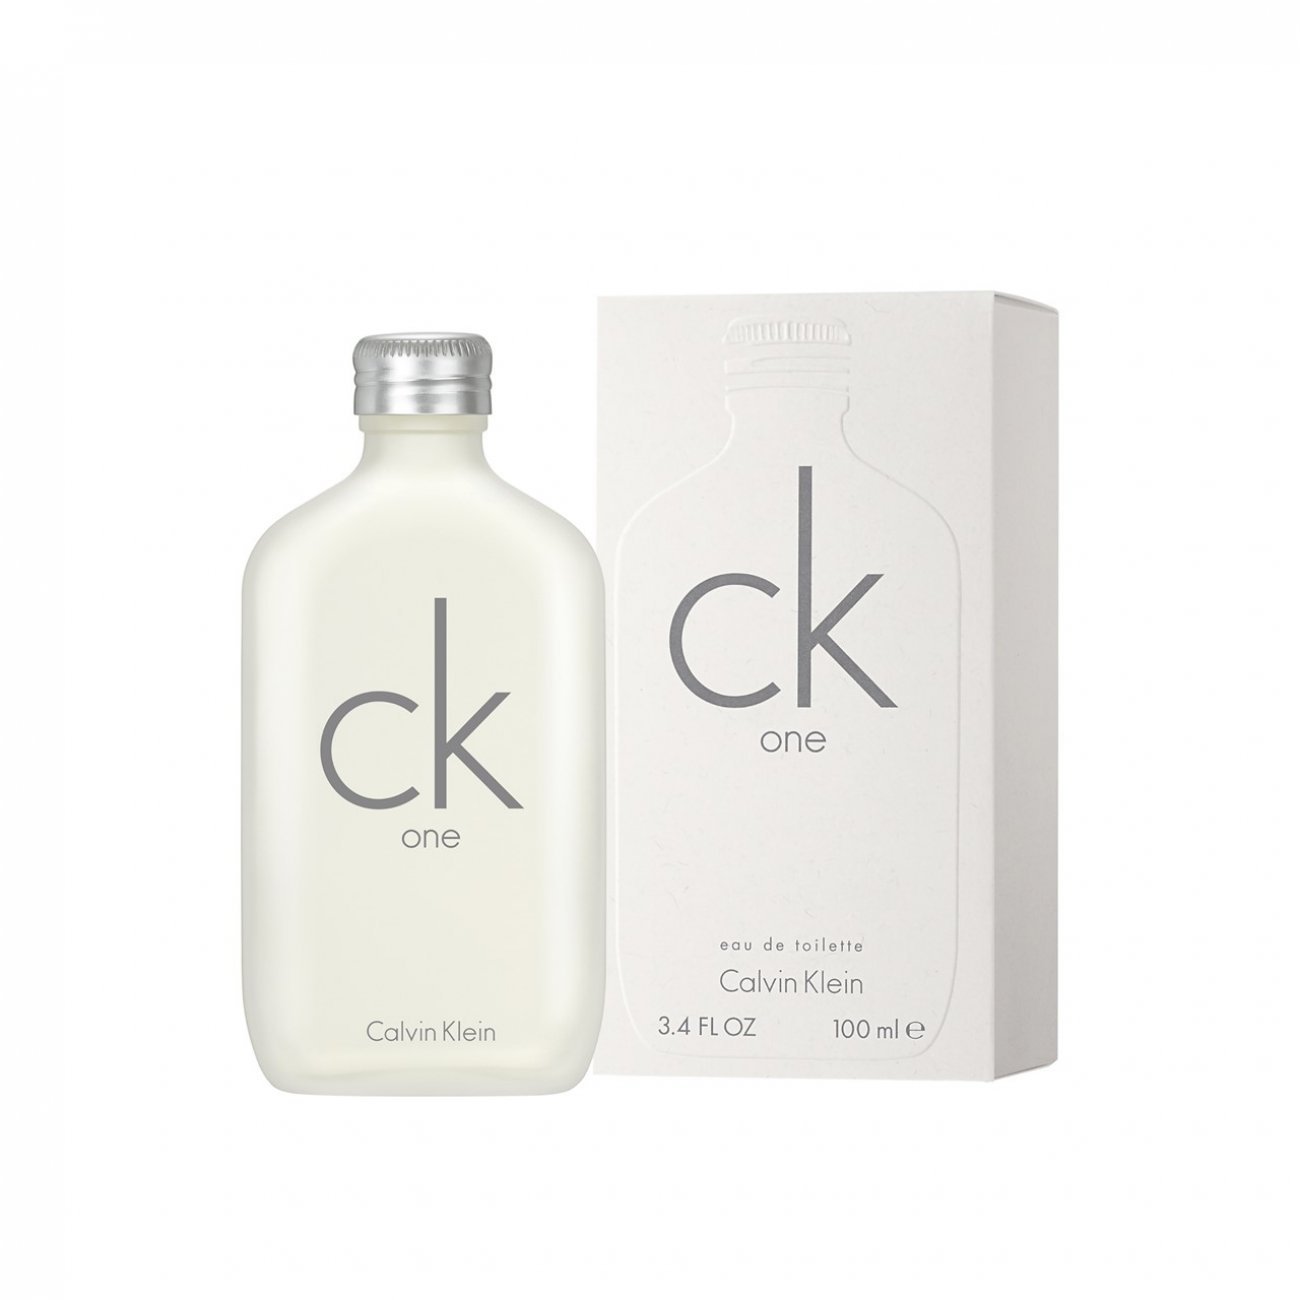 onduidelijk Bestuurbaar Interpretatie Buy Calvin Klein CK One Eau de Toilette 100ml (3.4fl.oz.) · USA